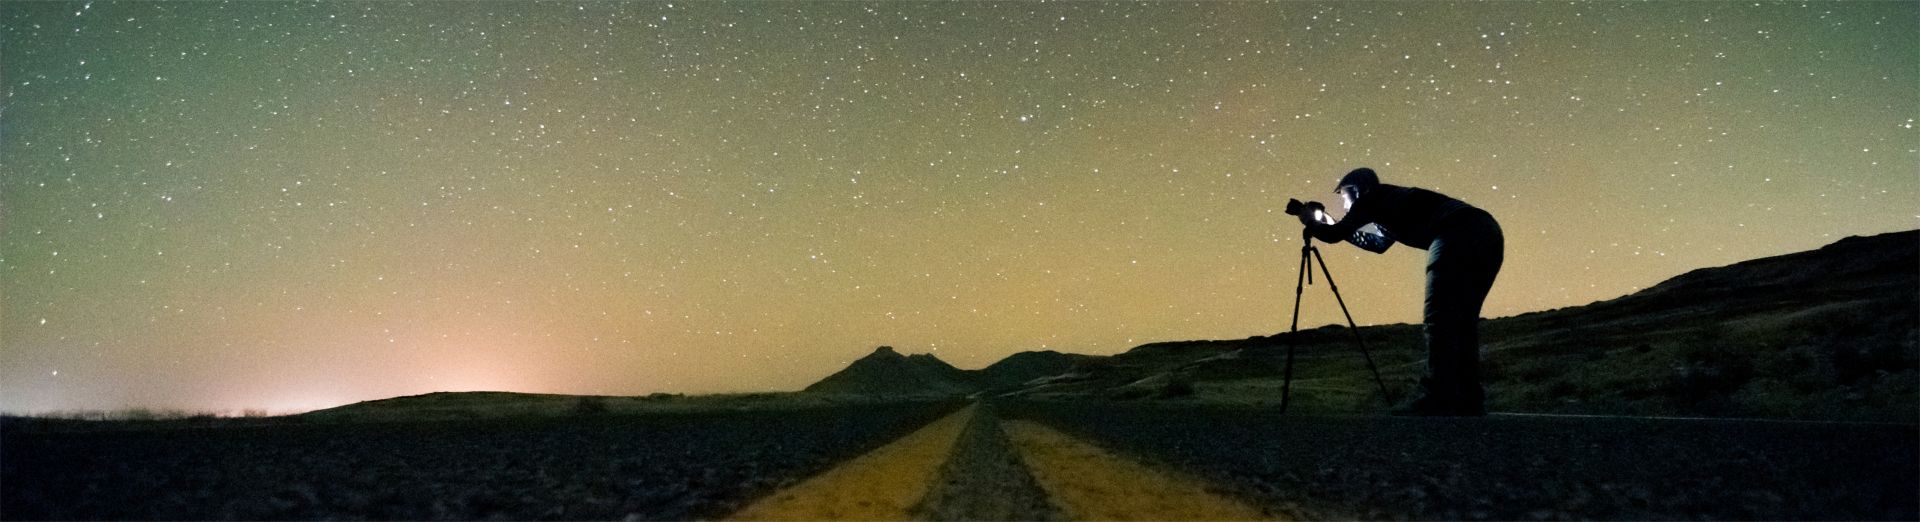 Foto di uomo che esplora le stelle con una fotocamera, a simboleggiare SAP Road Map Explorer